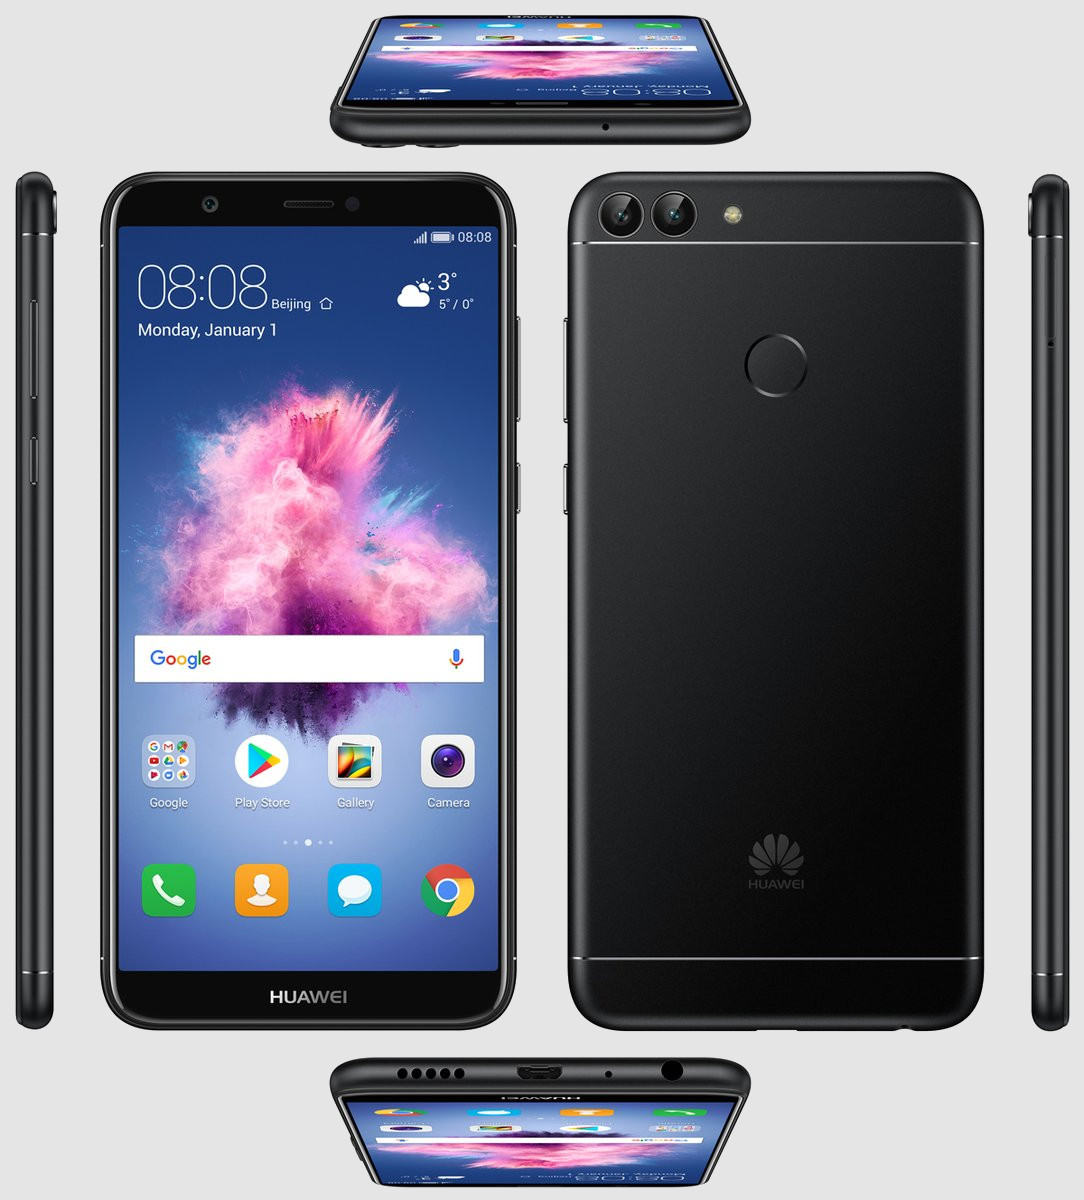 Huawei PSmart (Huawei Enjoy 7S) получит 5.65-дюймовый 18:9 дисплей и операционную систему Android 8 Oreo